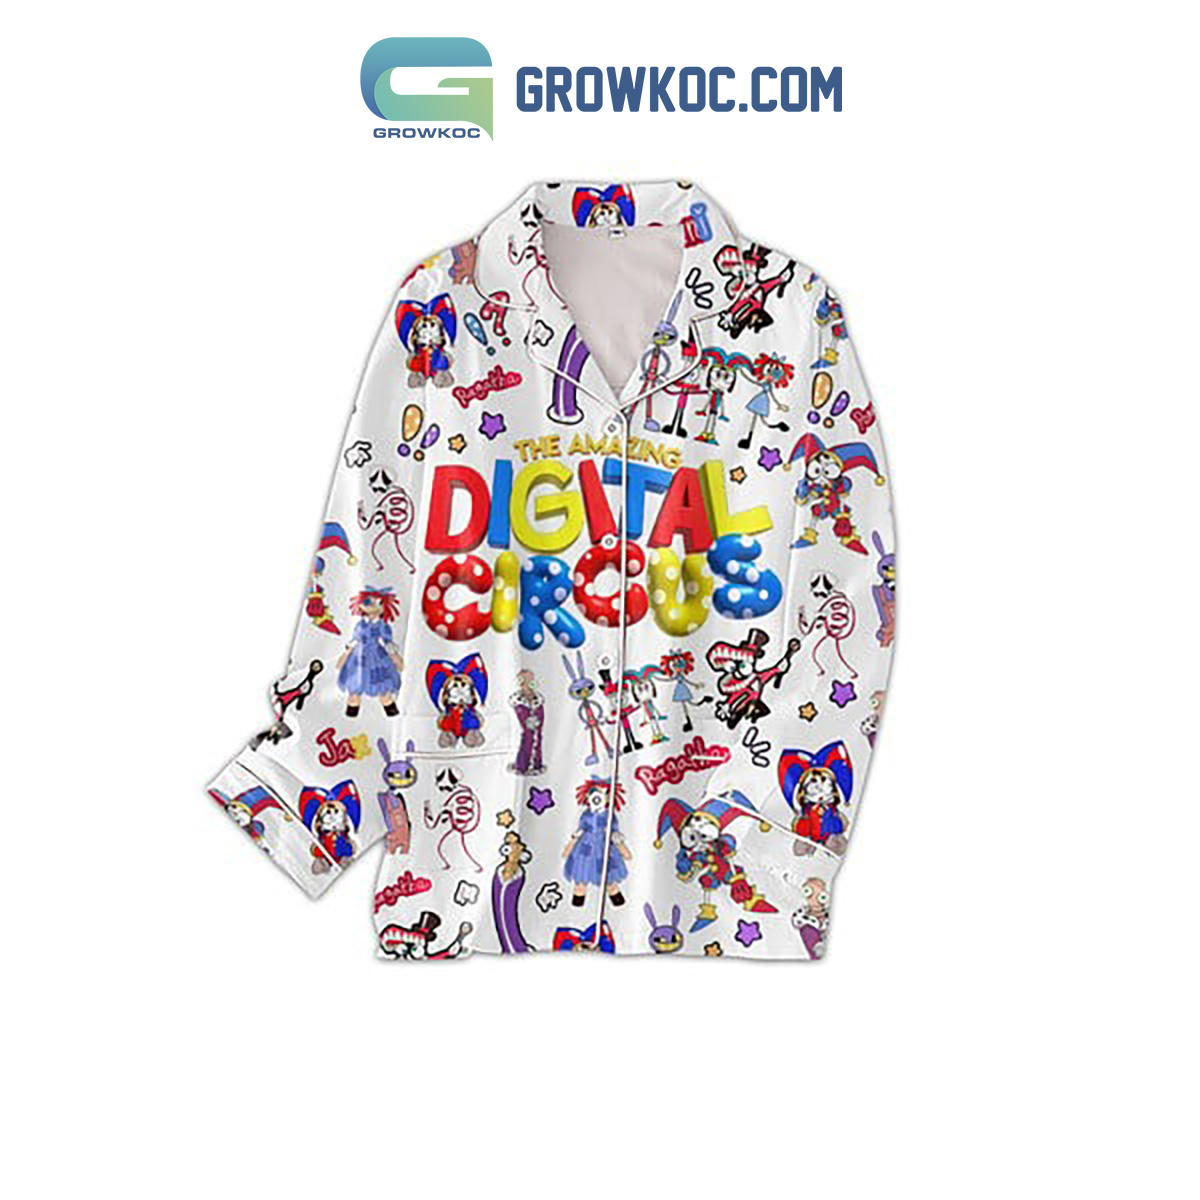 The Amazing Digital Circus Pajamas Set - Growkoc